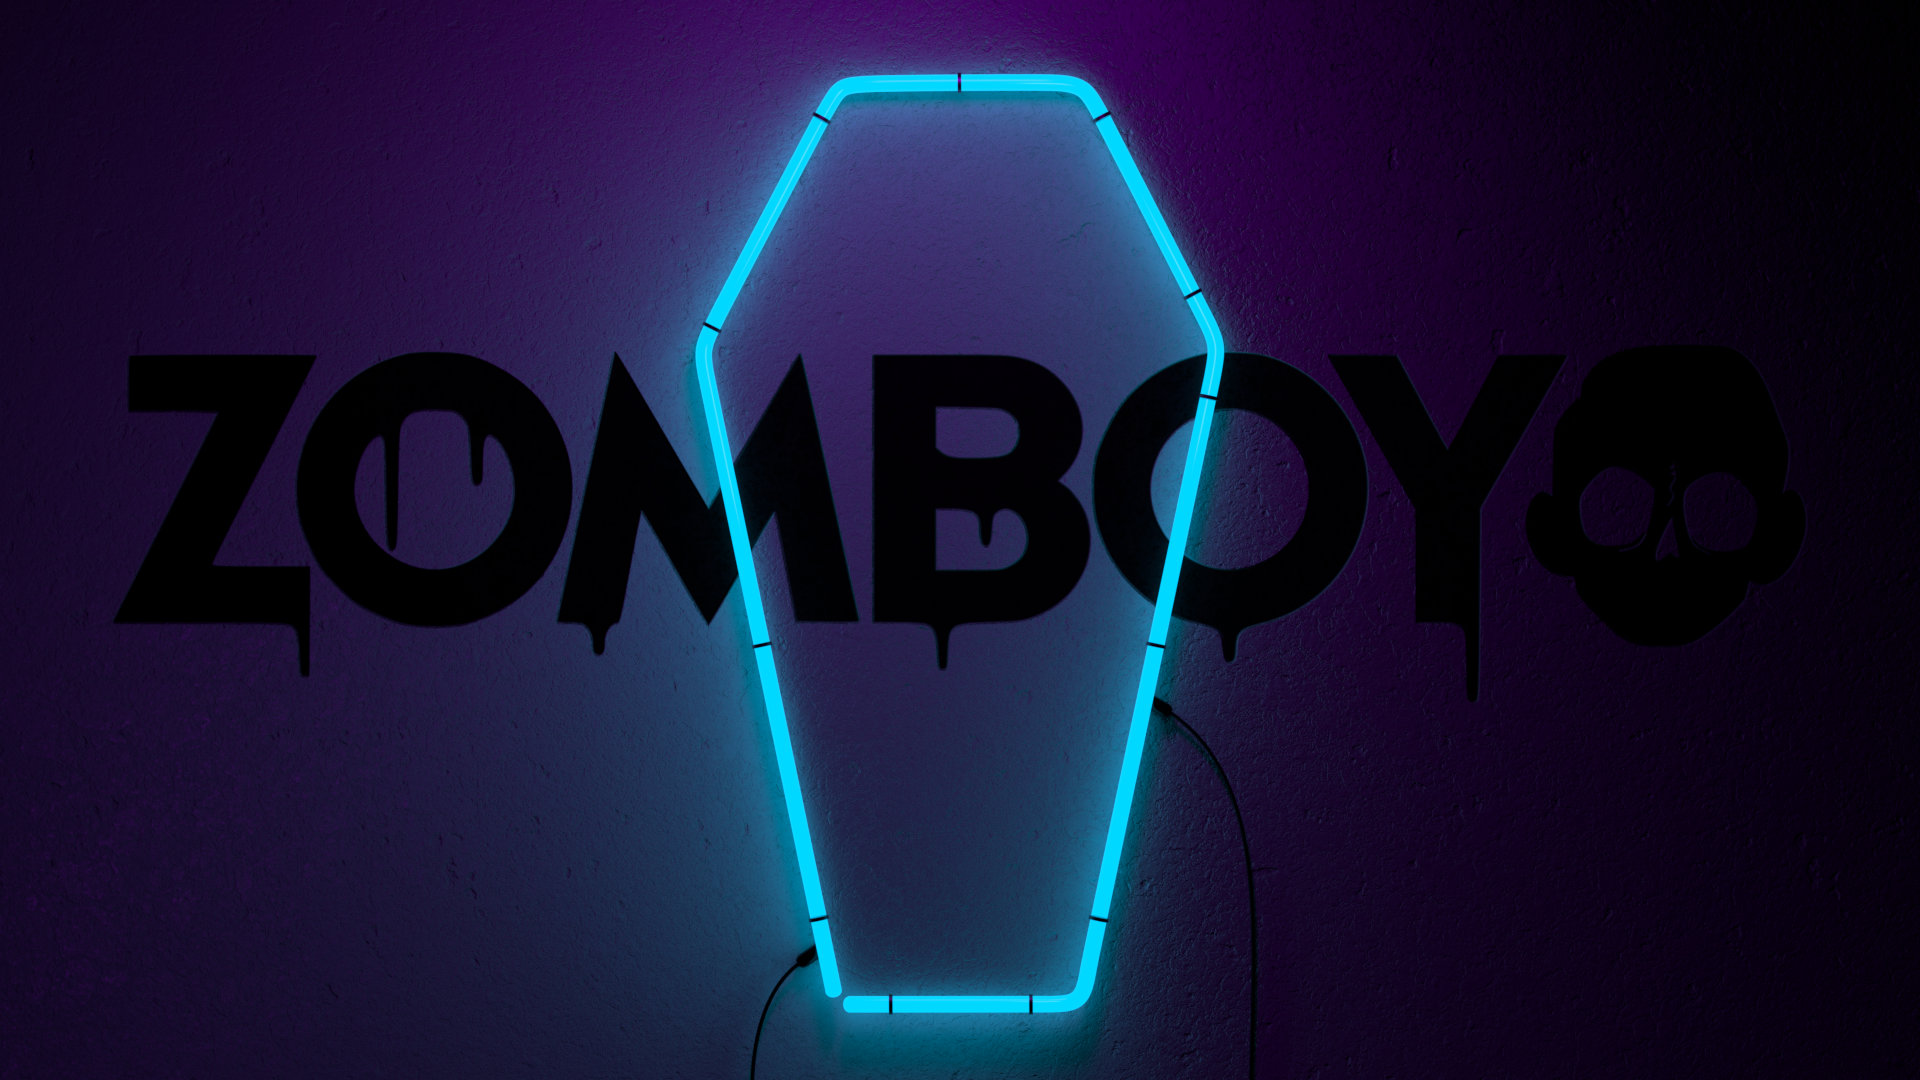 Blender - Zomboy Neon Grave Hd , HD Wallpaper & Backgrounds